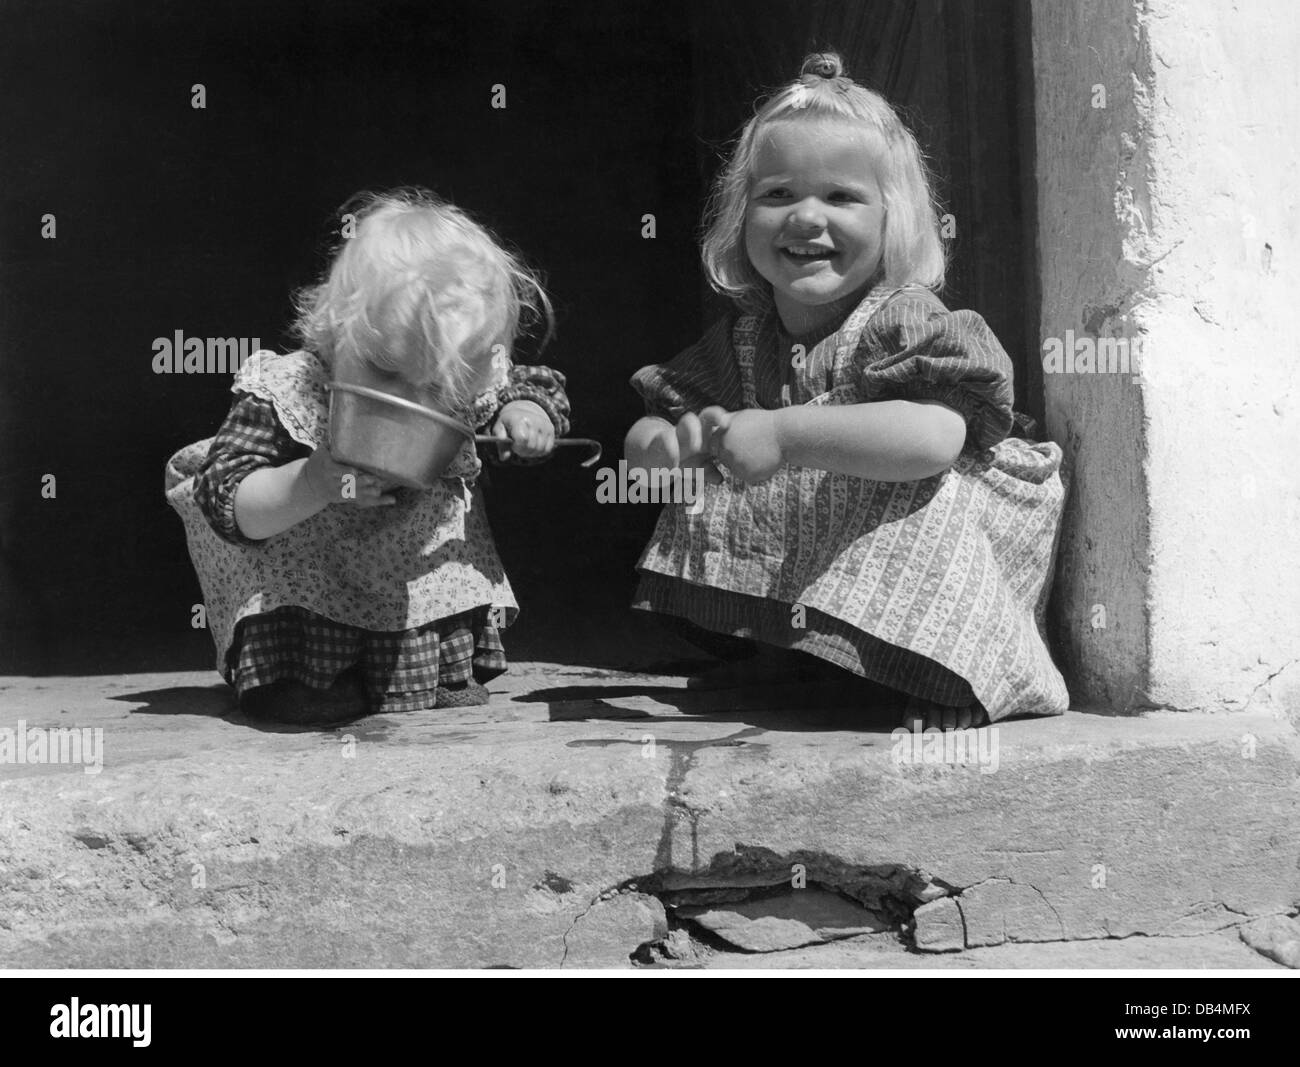 Agricoltura, agricoltori di montagna, due bambine, una bevente da una ciotola di stagno, anni 50, diritti aggiuntivi-clearences-non disponibile Foto Stock